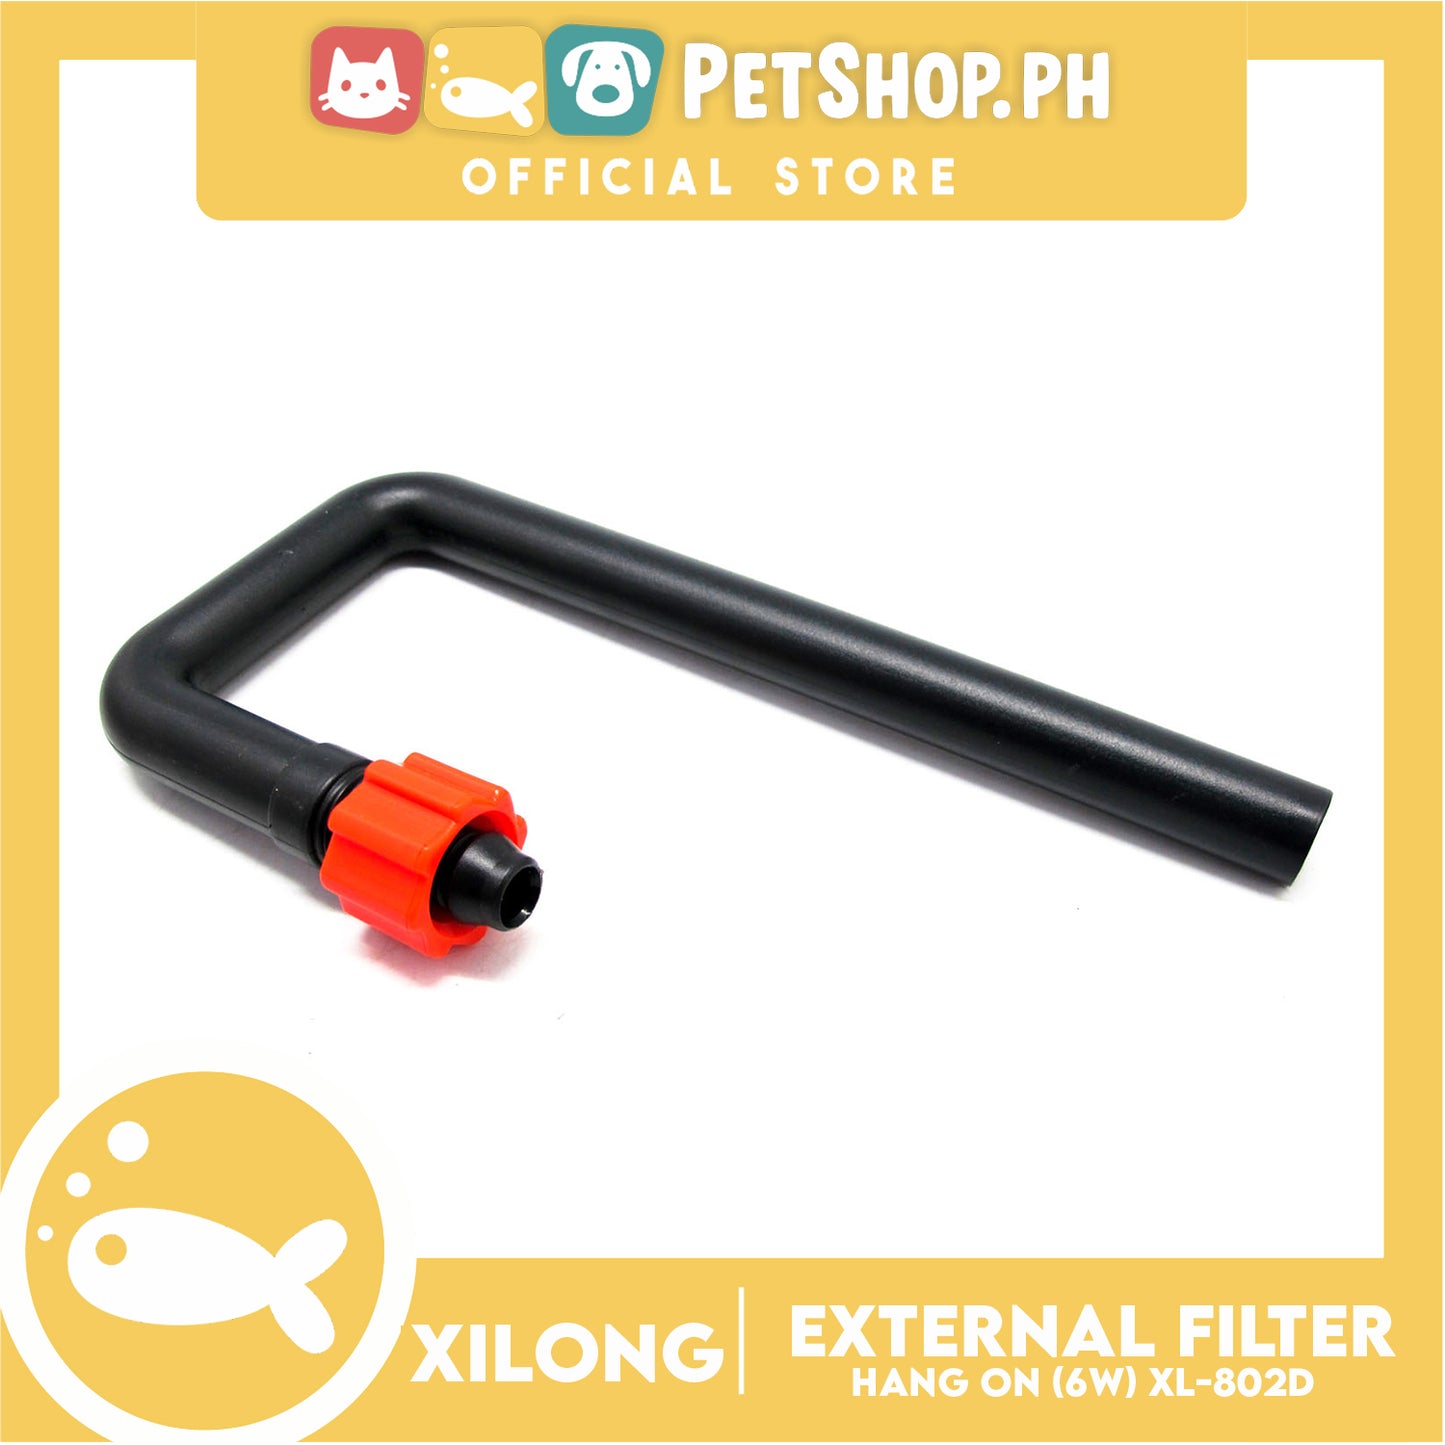 XL-802D Hang On External Filter